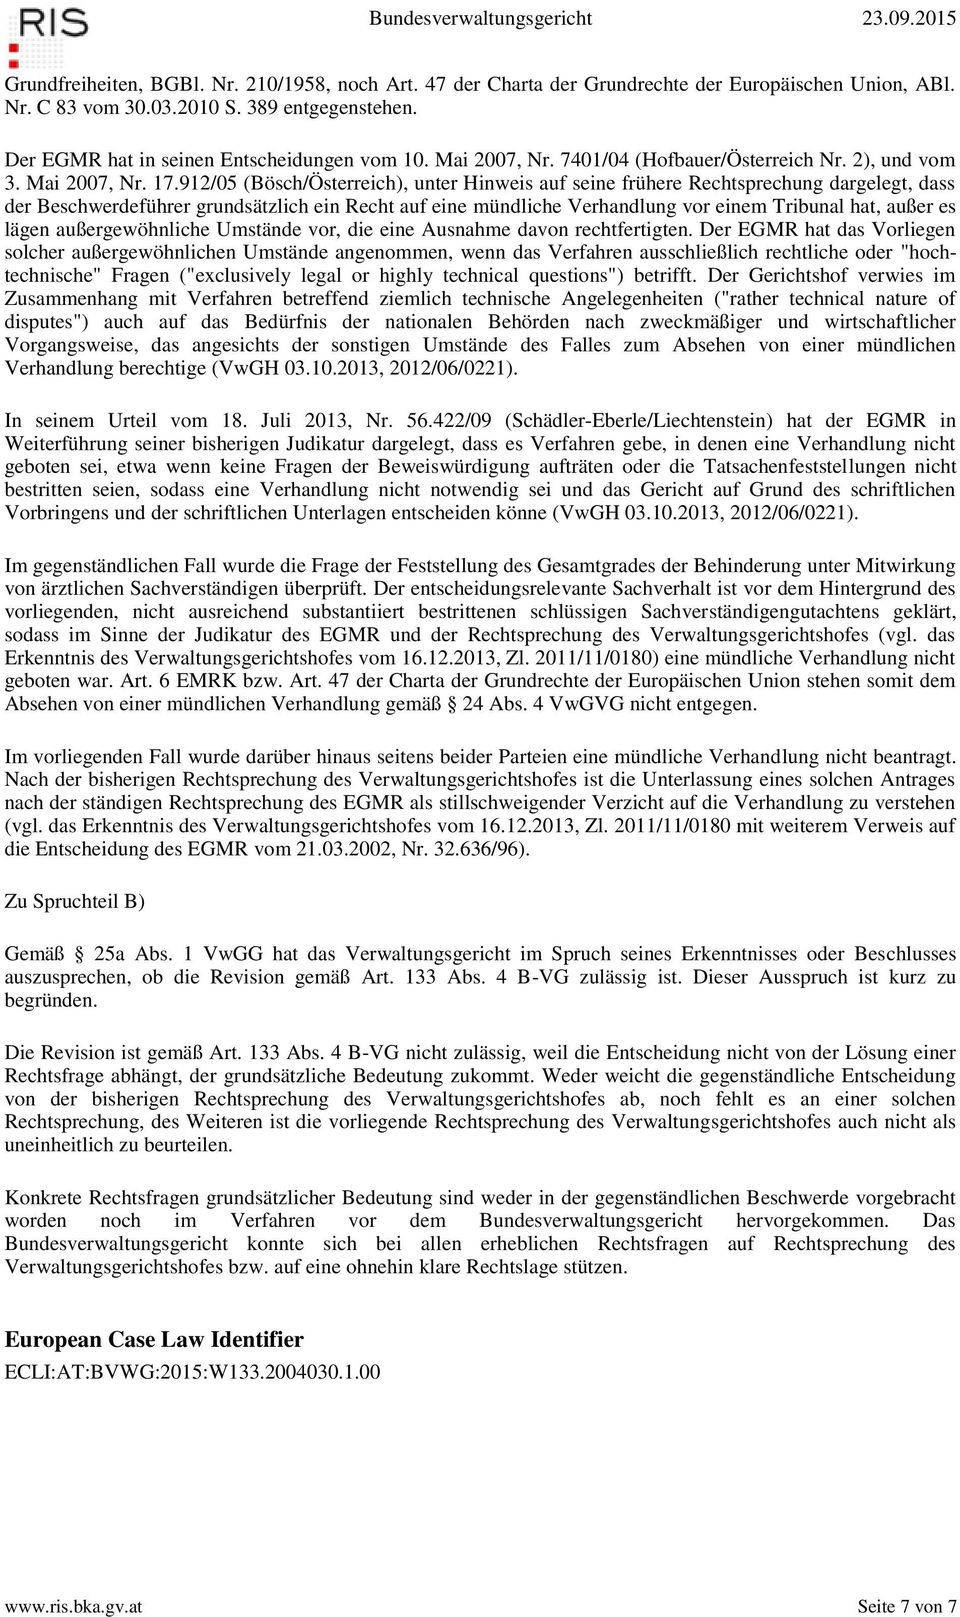 912/05 (Bösch/Österreich), unter Hinweis auf seine frühere Rechtsprechung dargelegt, dass der Beschwerdeführer grundsätzlich ein Recht auf eine mündliche Verhandlung vor einem Tribunal hat, außer es